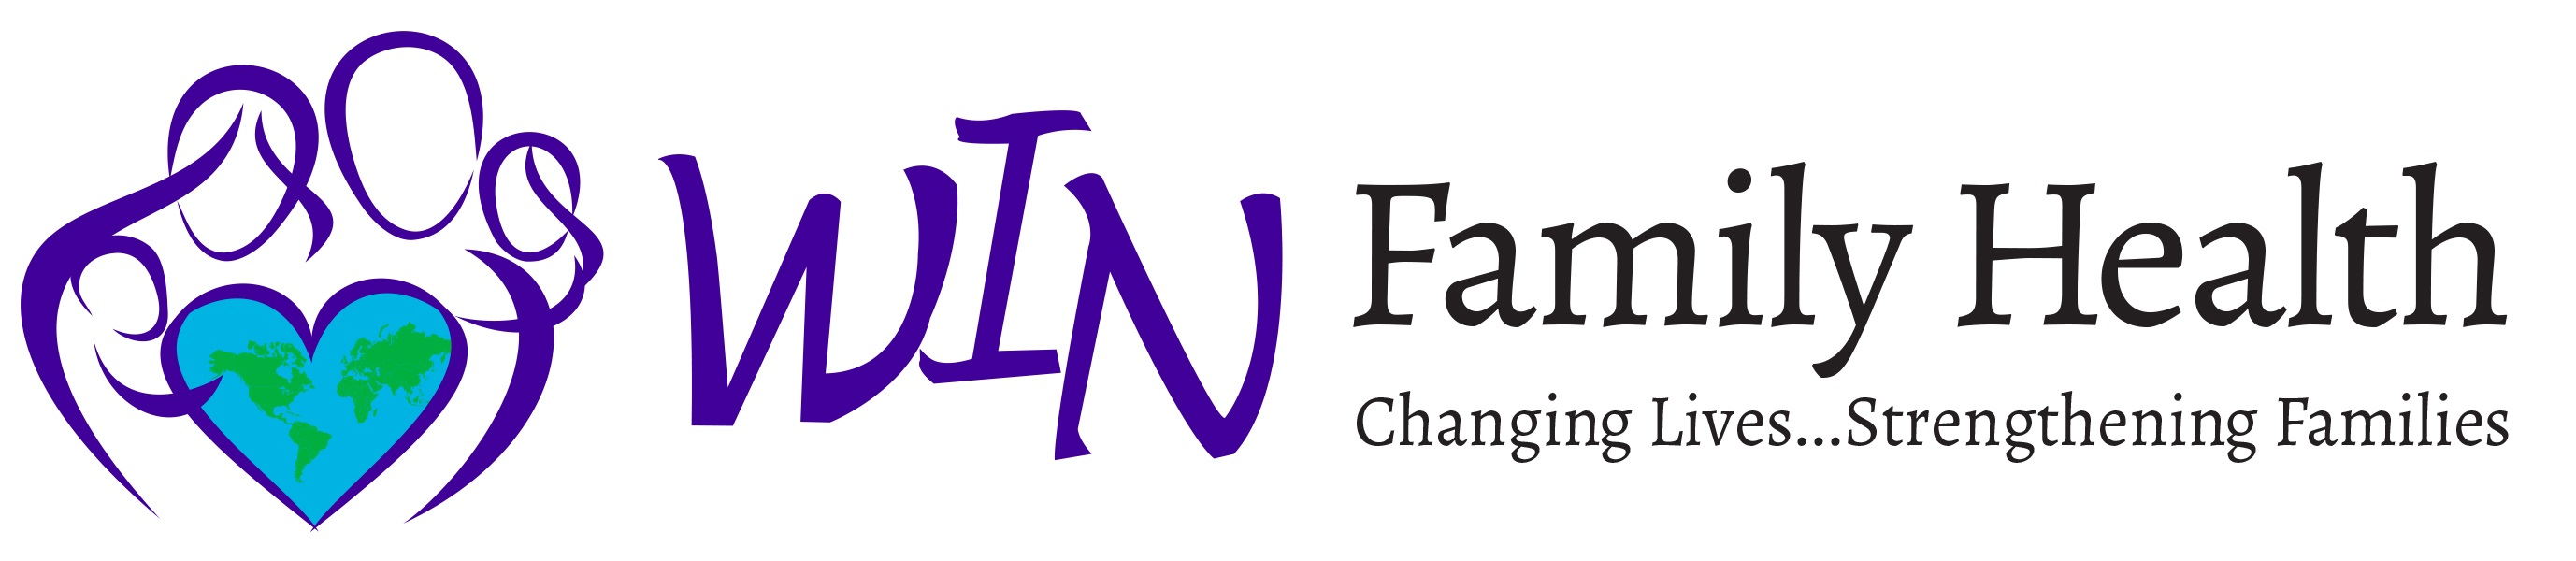 WIN Family Health Company Logo